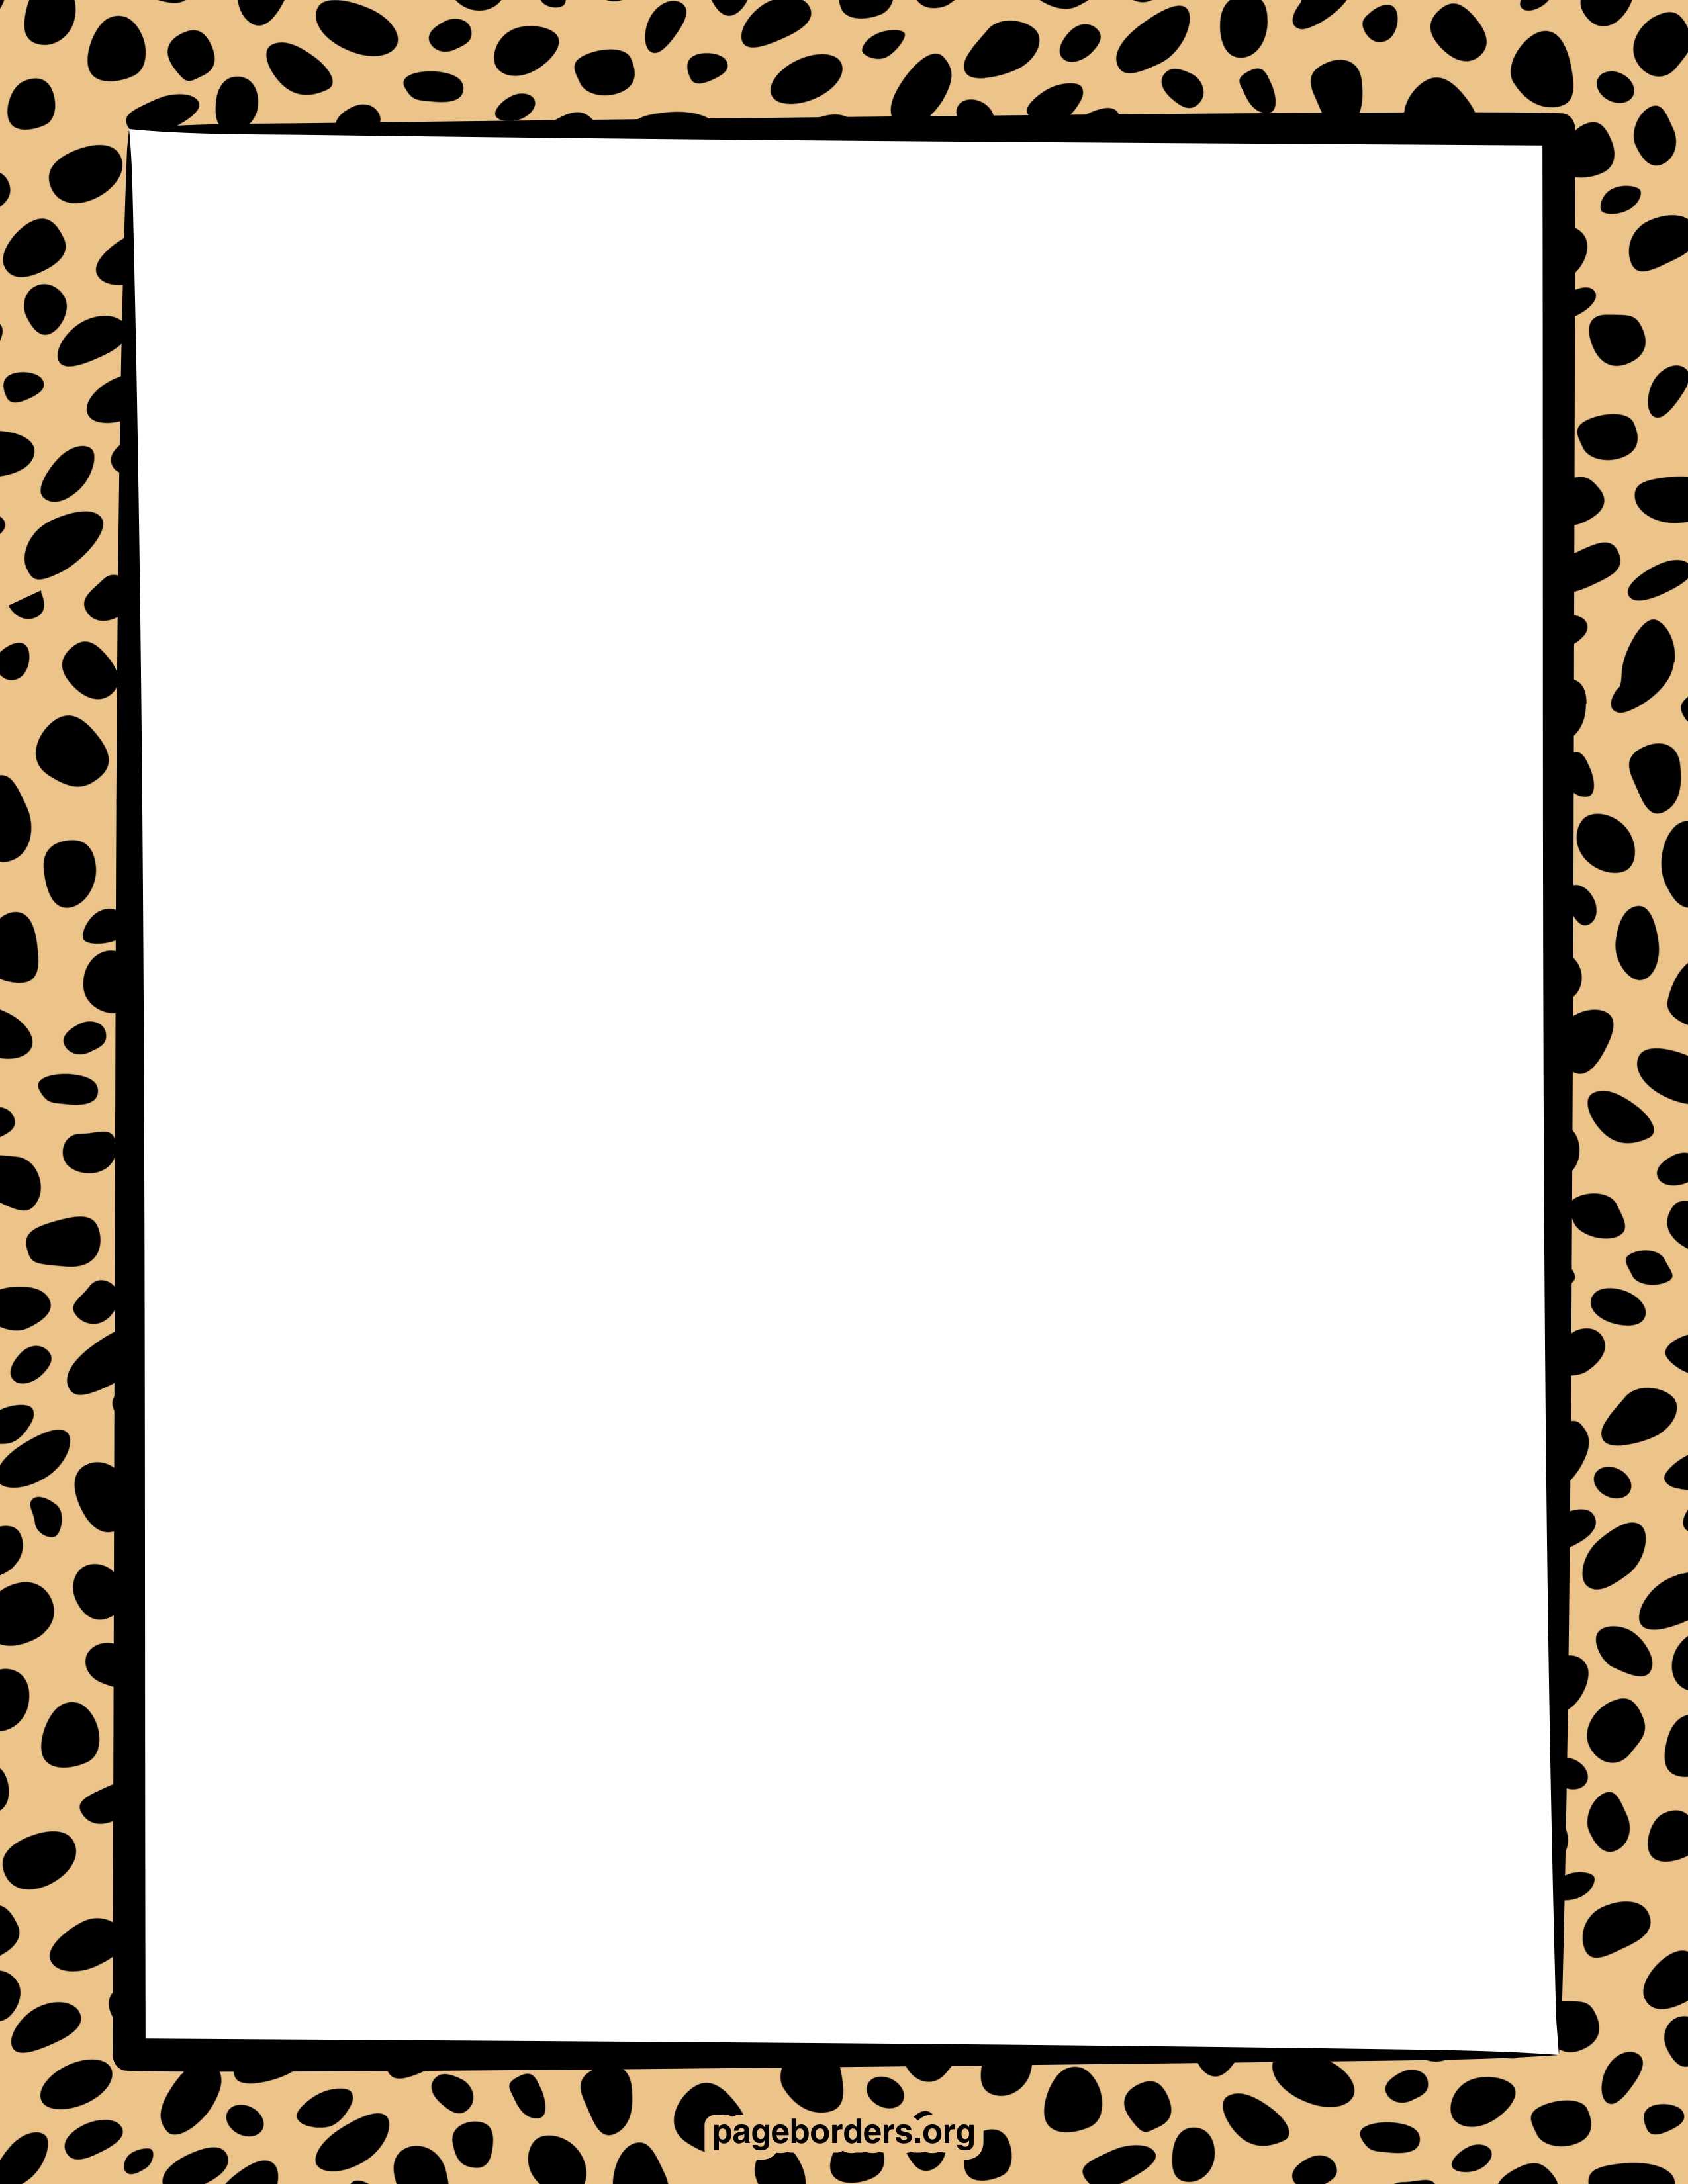 Free zebra print border